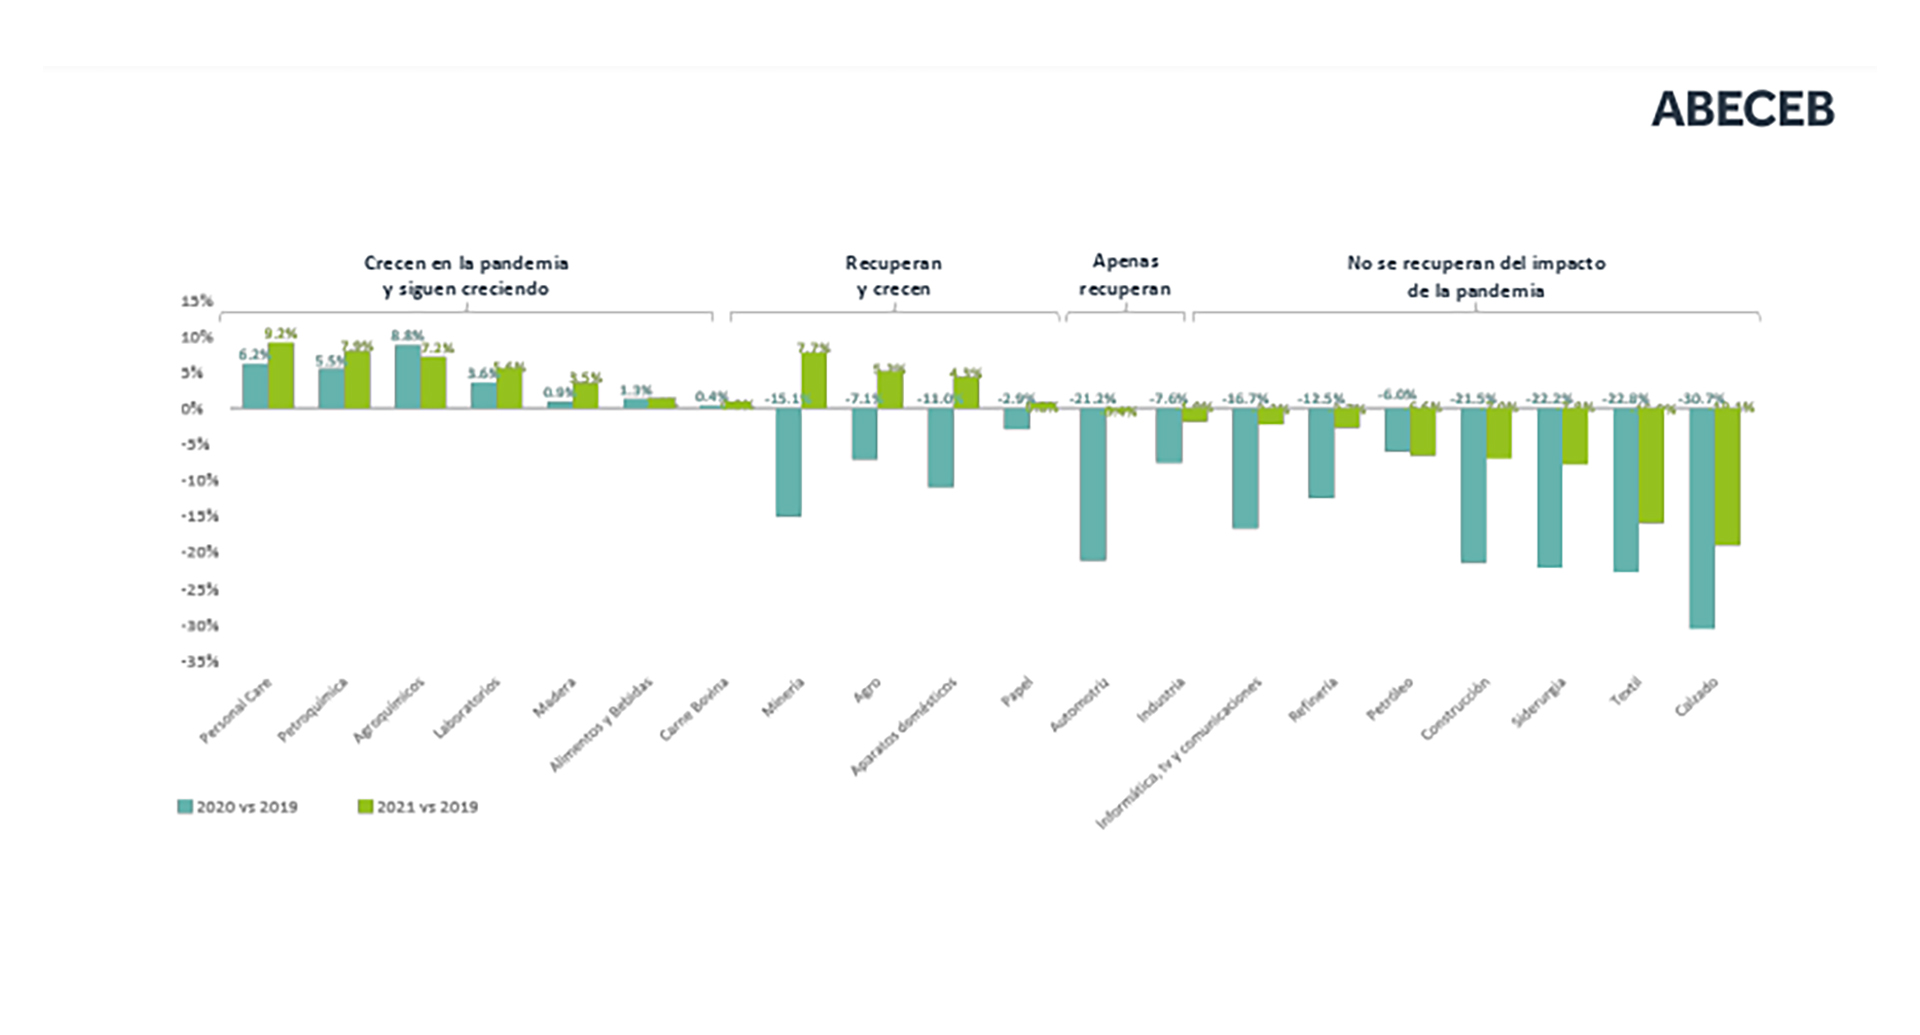 Caídas, recuperación parcial y total de los diferentes sectores económicos entre 2020 y 2021
Fuente: Abeceb